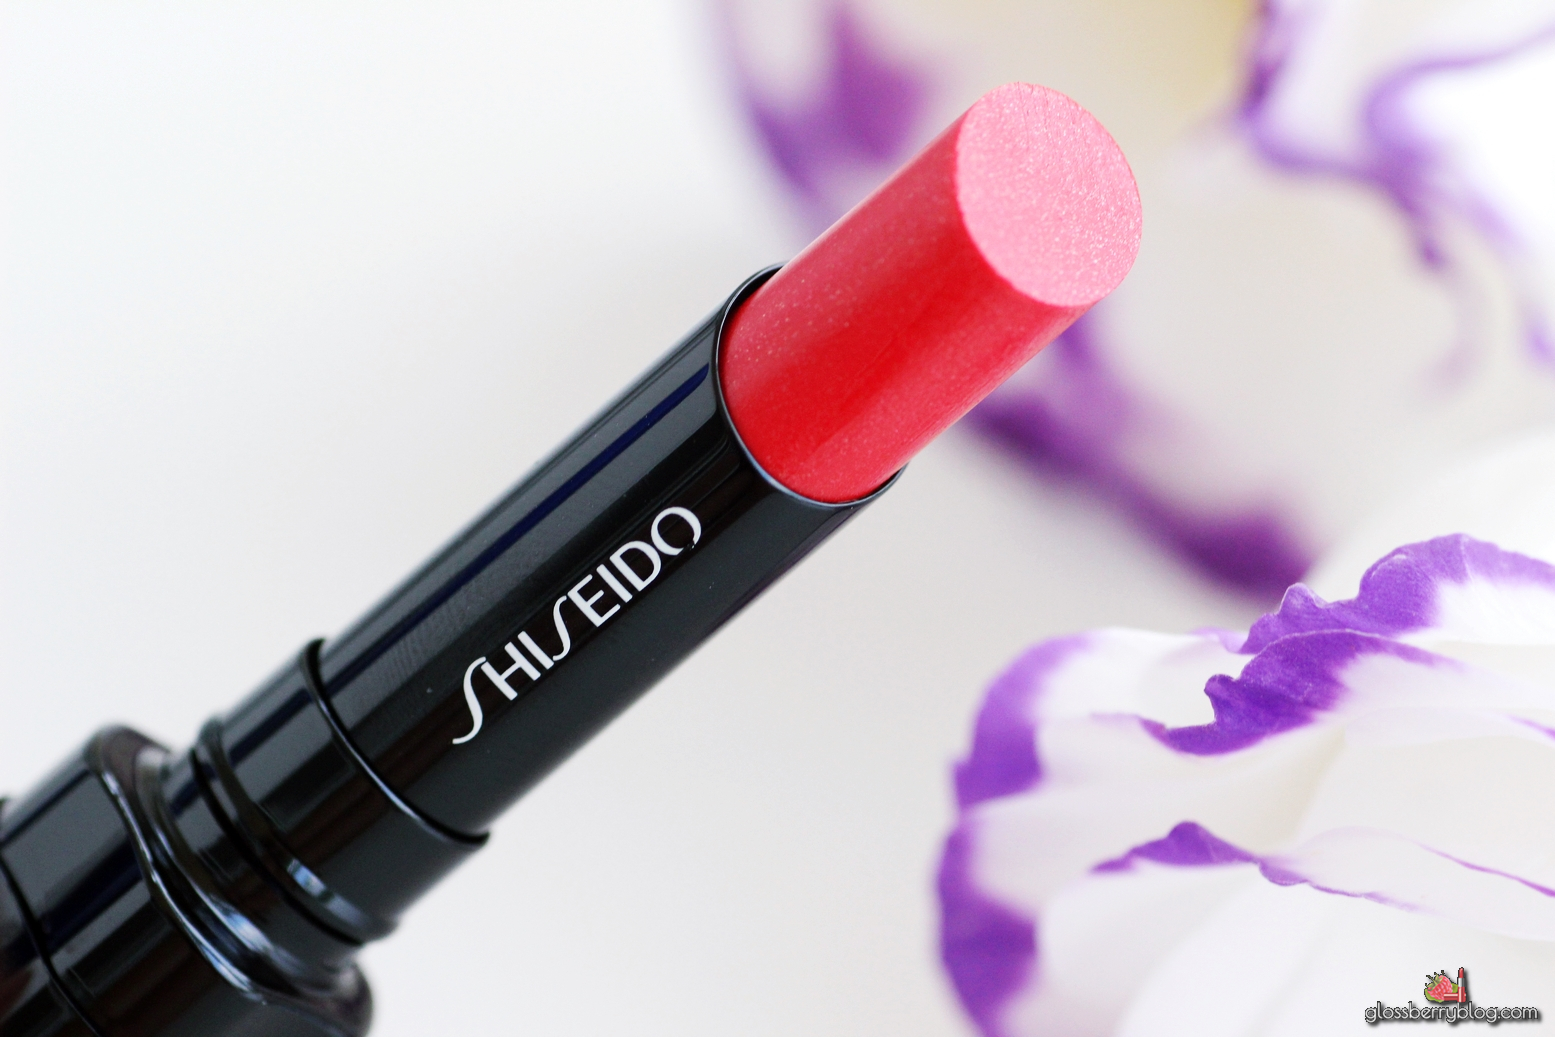  Shiseido - Veiled Rouge / RD506 -Carnevale בלוג איפור וטיפוח סקירה שפתון שיסיידו